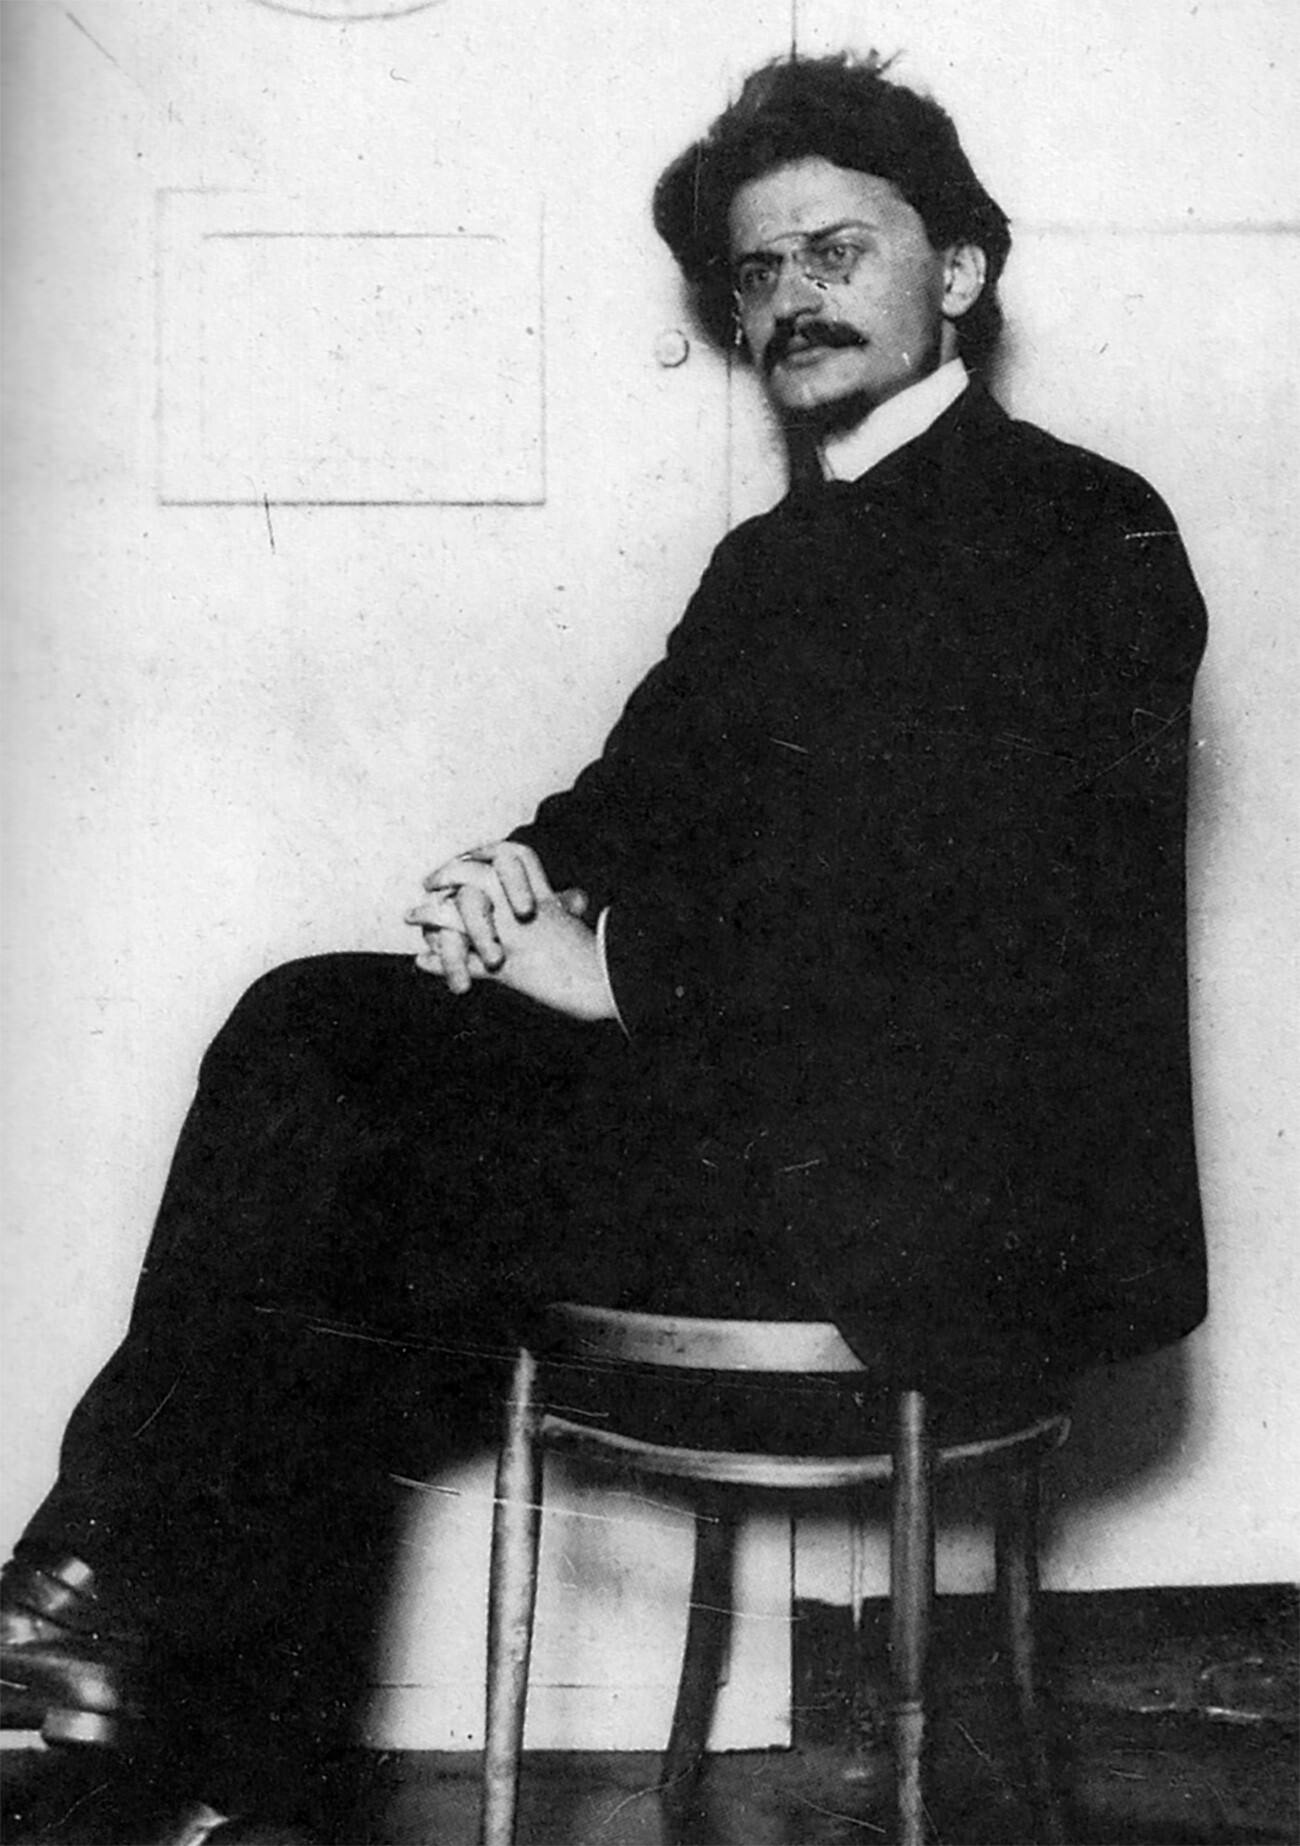 Trotsky prisoned in Saint-Petersburg, 1906.